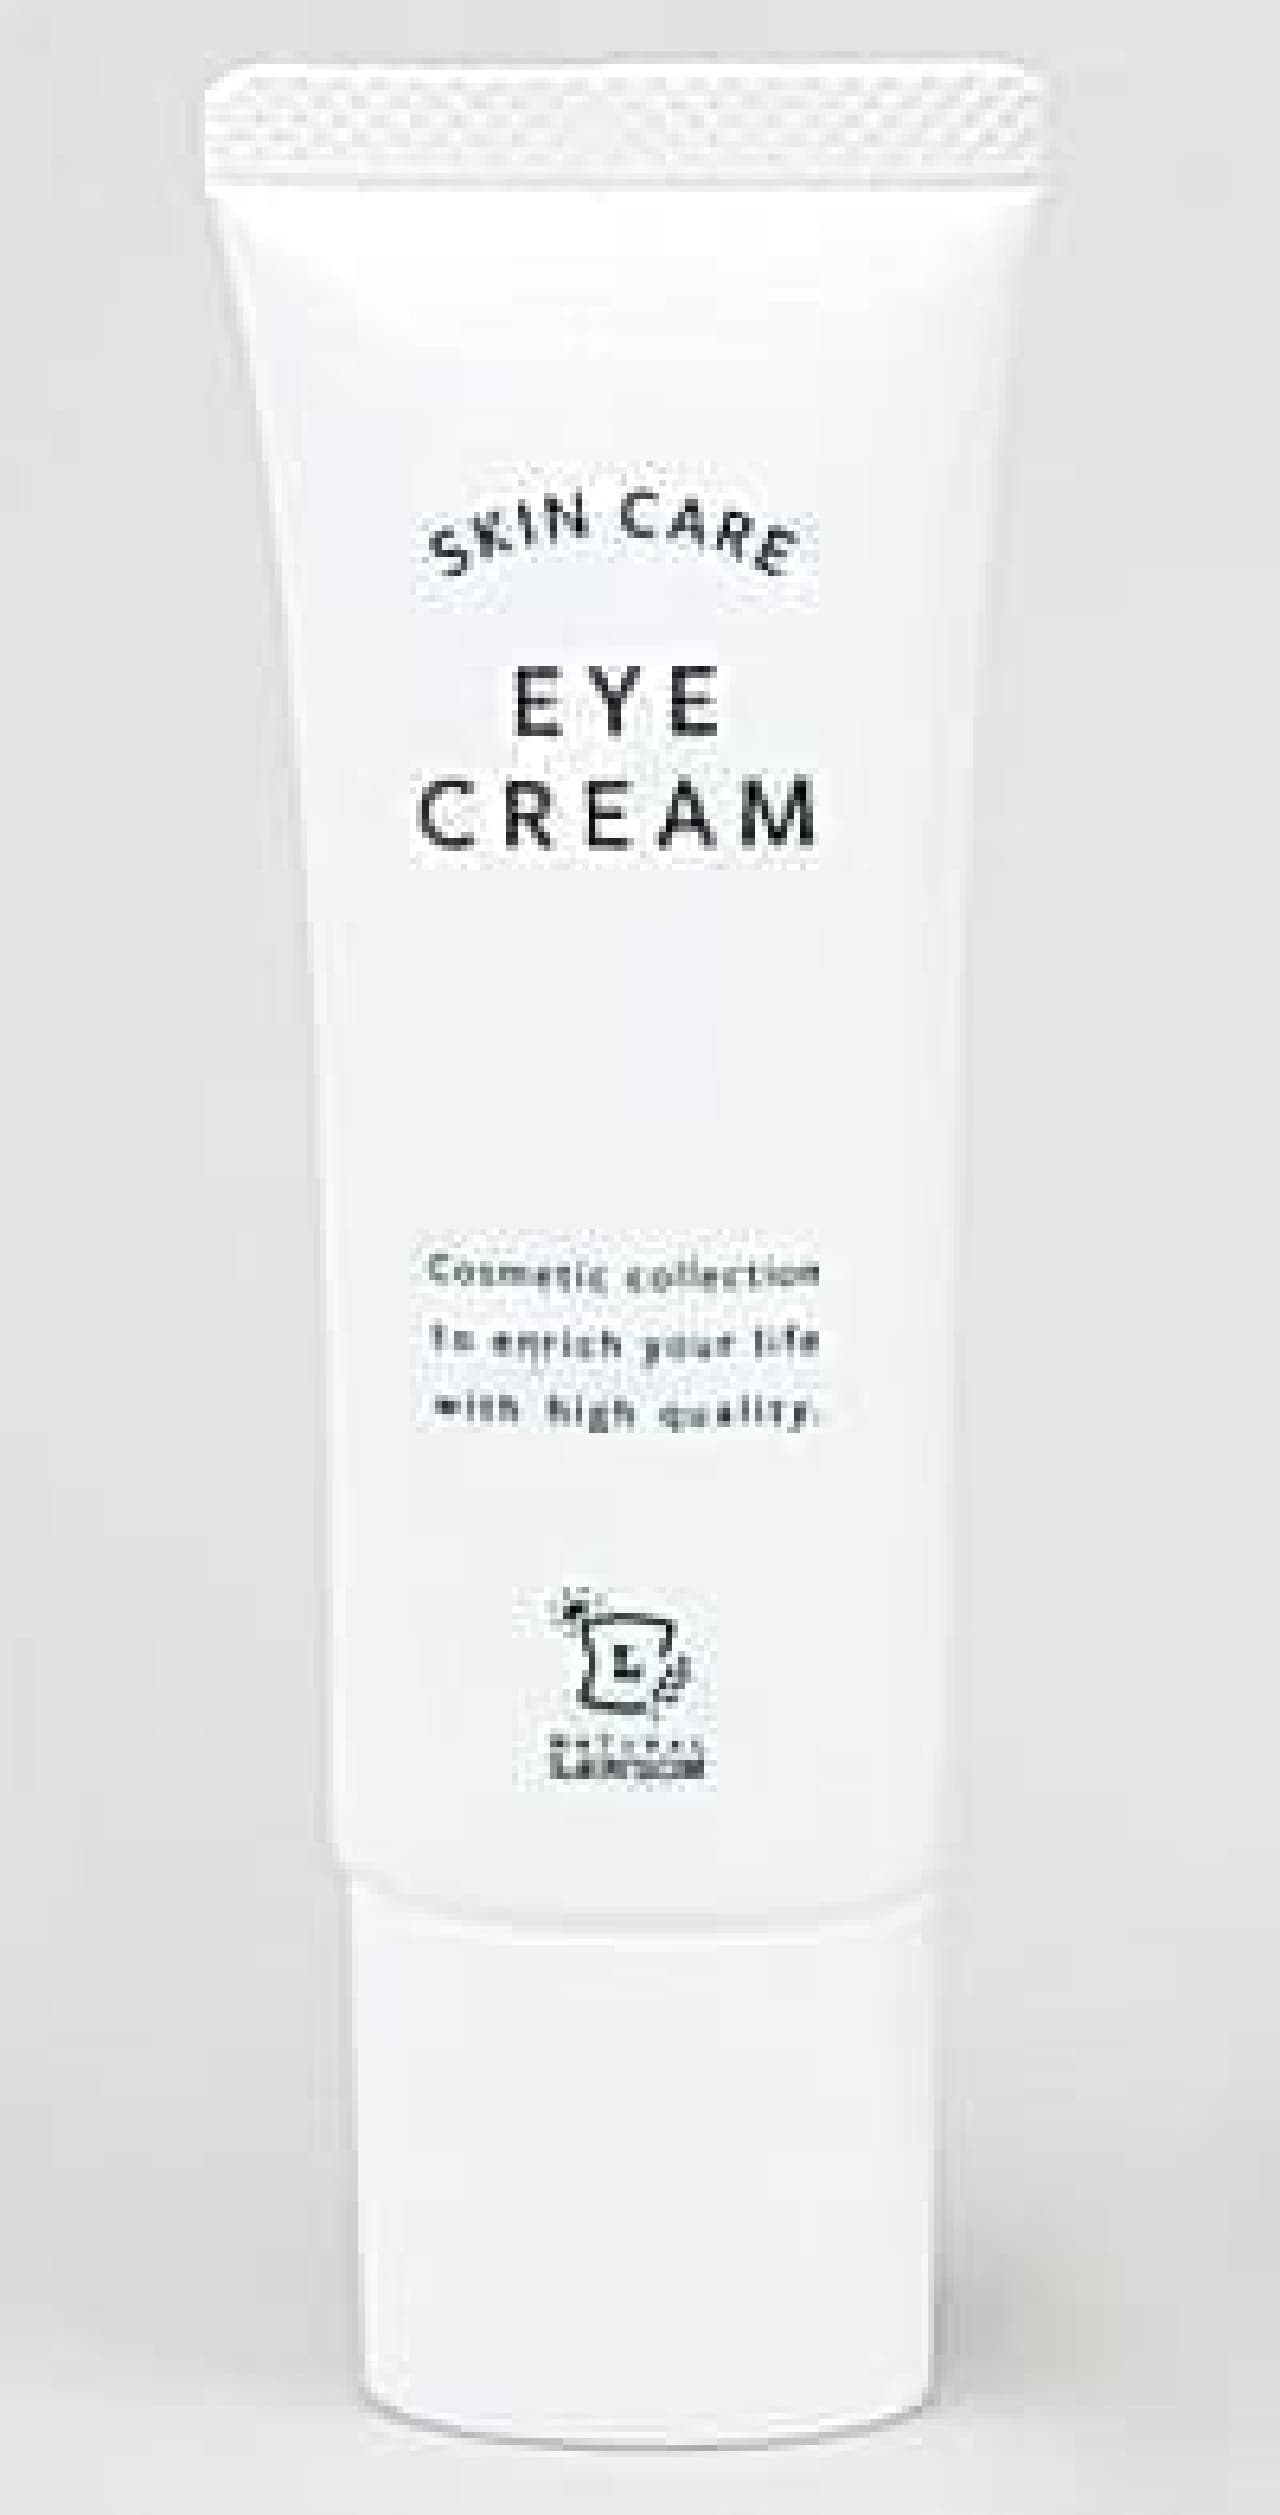 Lawson "NL Eye Cream"